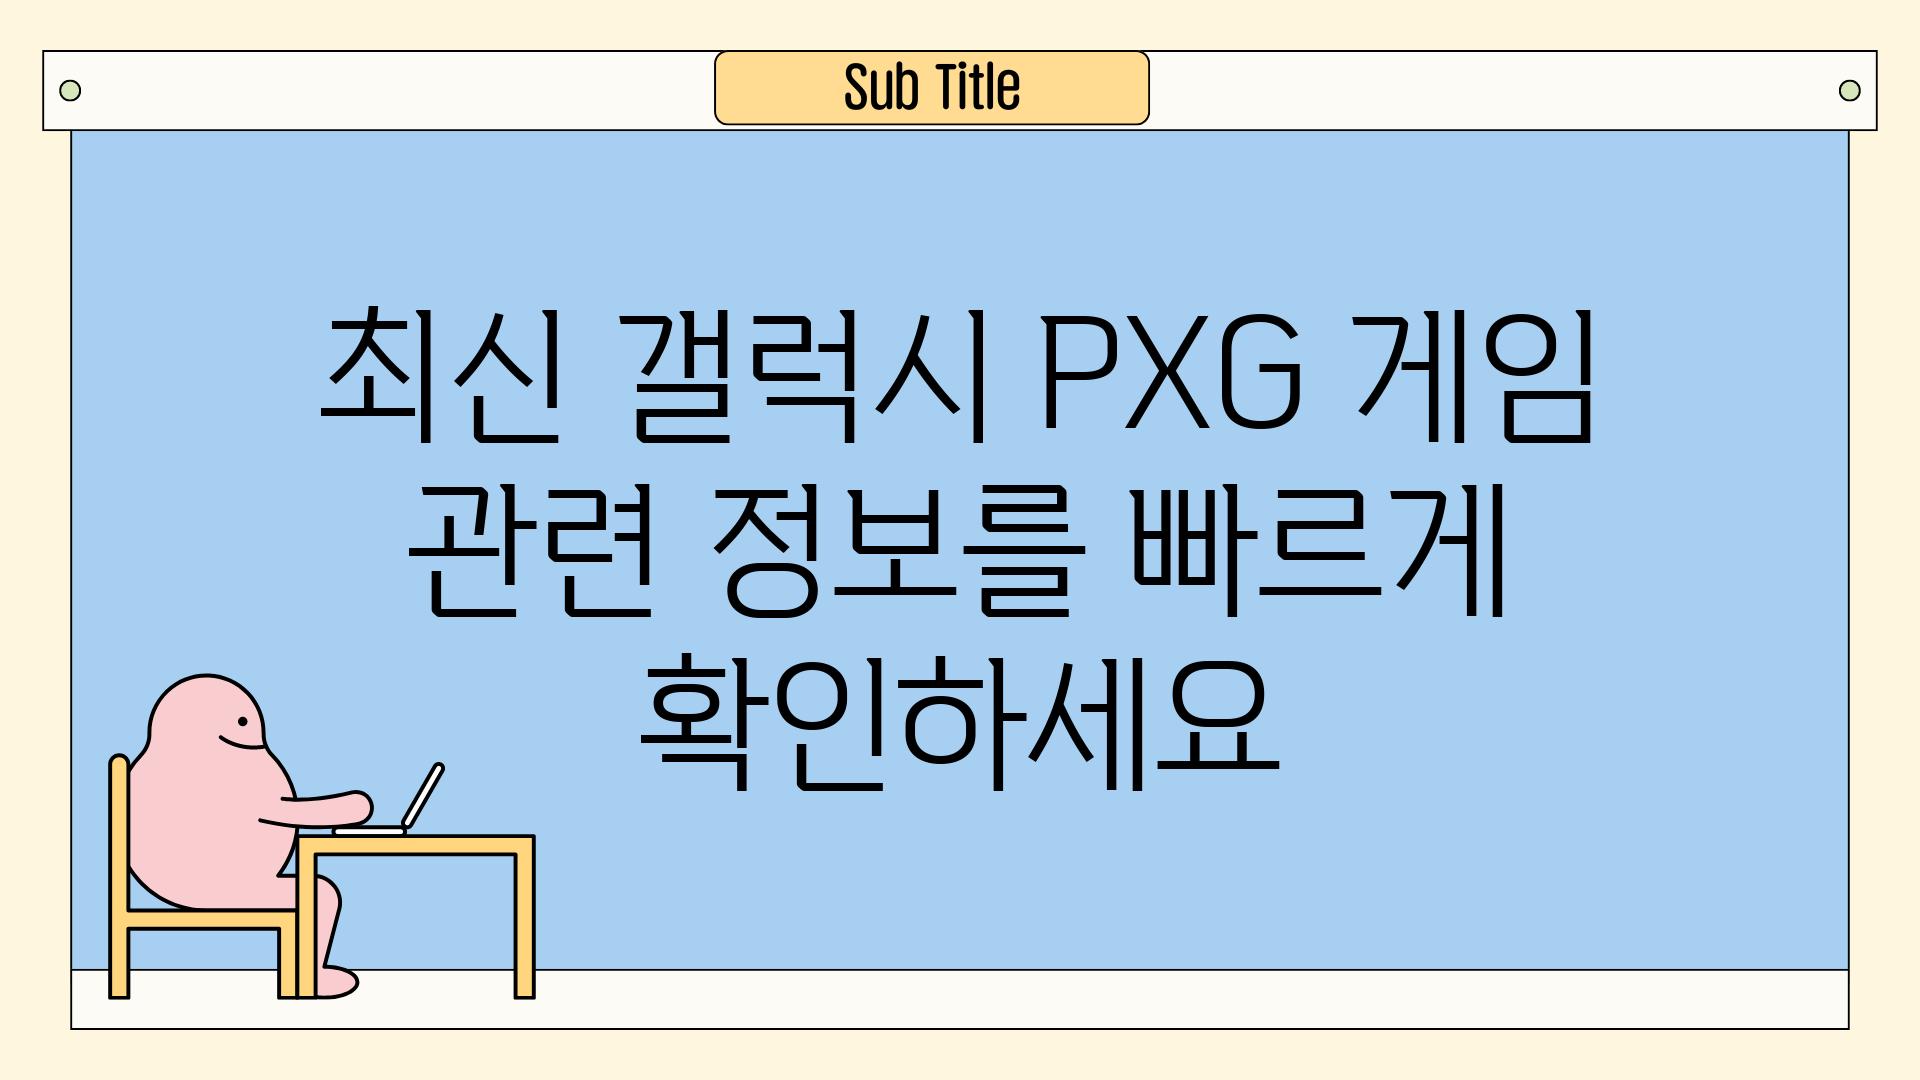 최신 갤럭시 PXG 게임 관련 정보를 빠르게 확인하세요